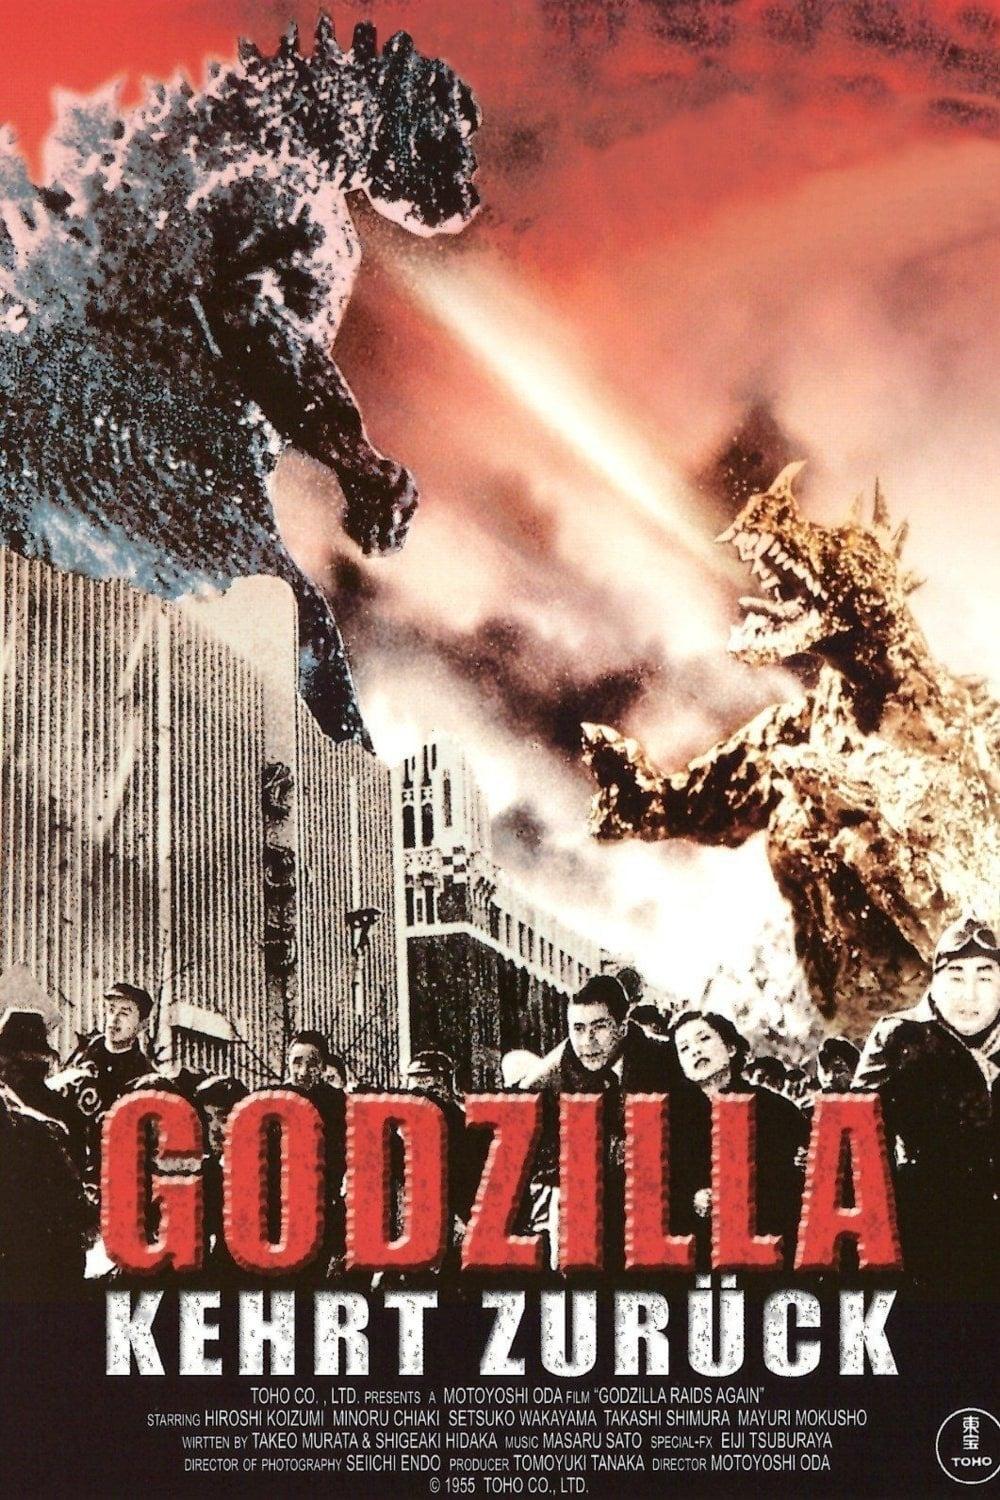 Godzilla kehrt zurück poster